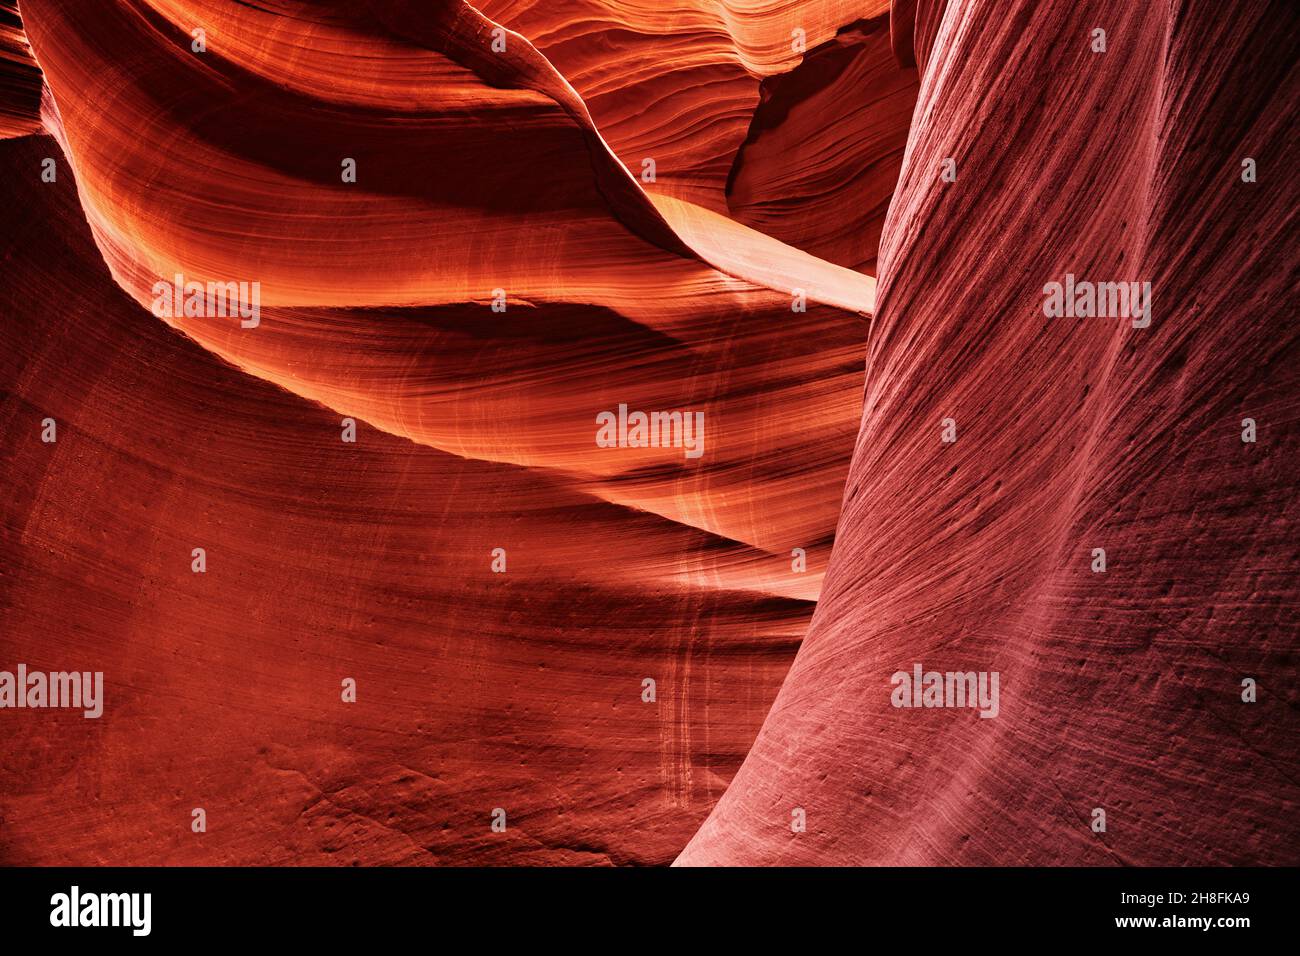 Lower Antelope canyon, Arizona, USA Stock Photo